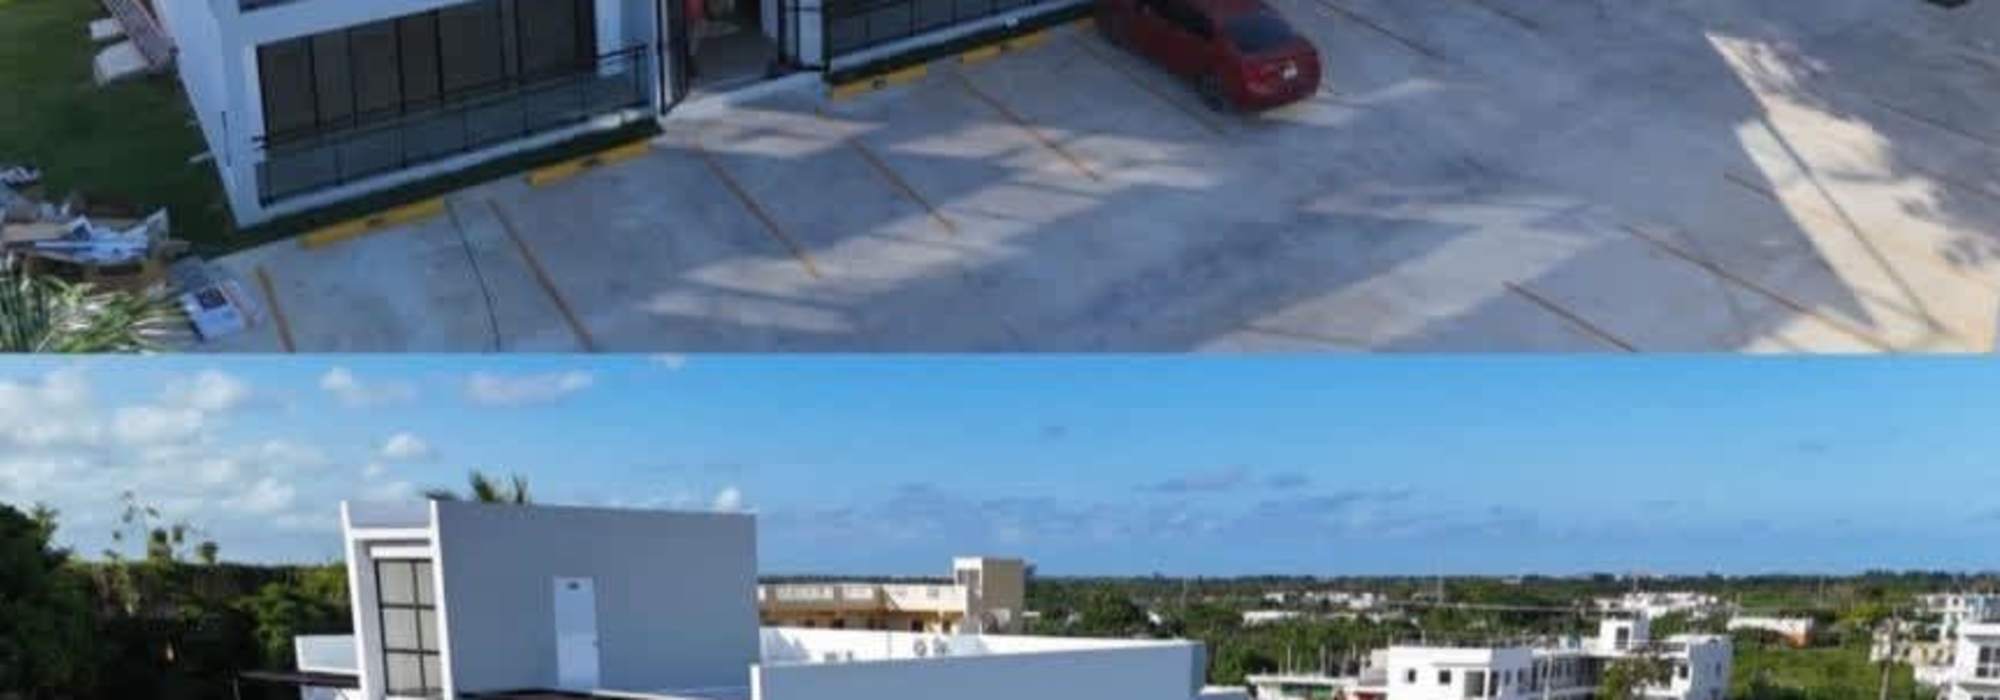 Apartamento amueblado en venta en Punta Cana, friusa